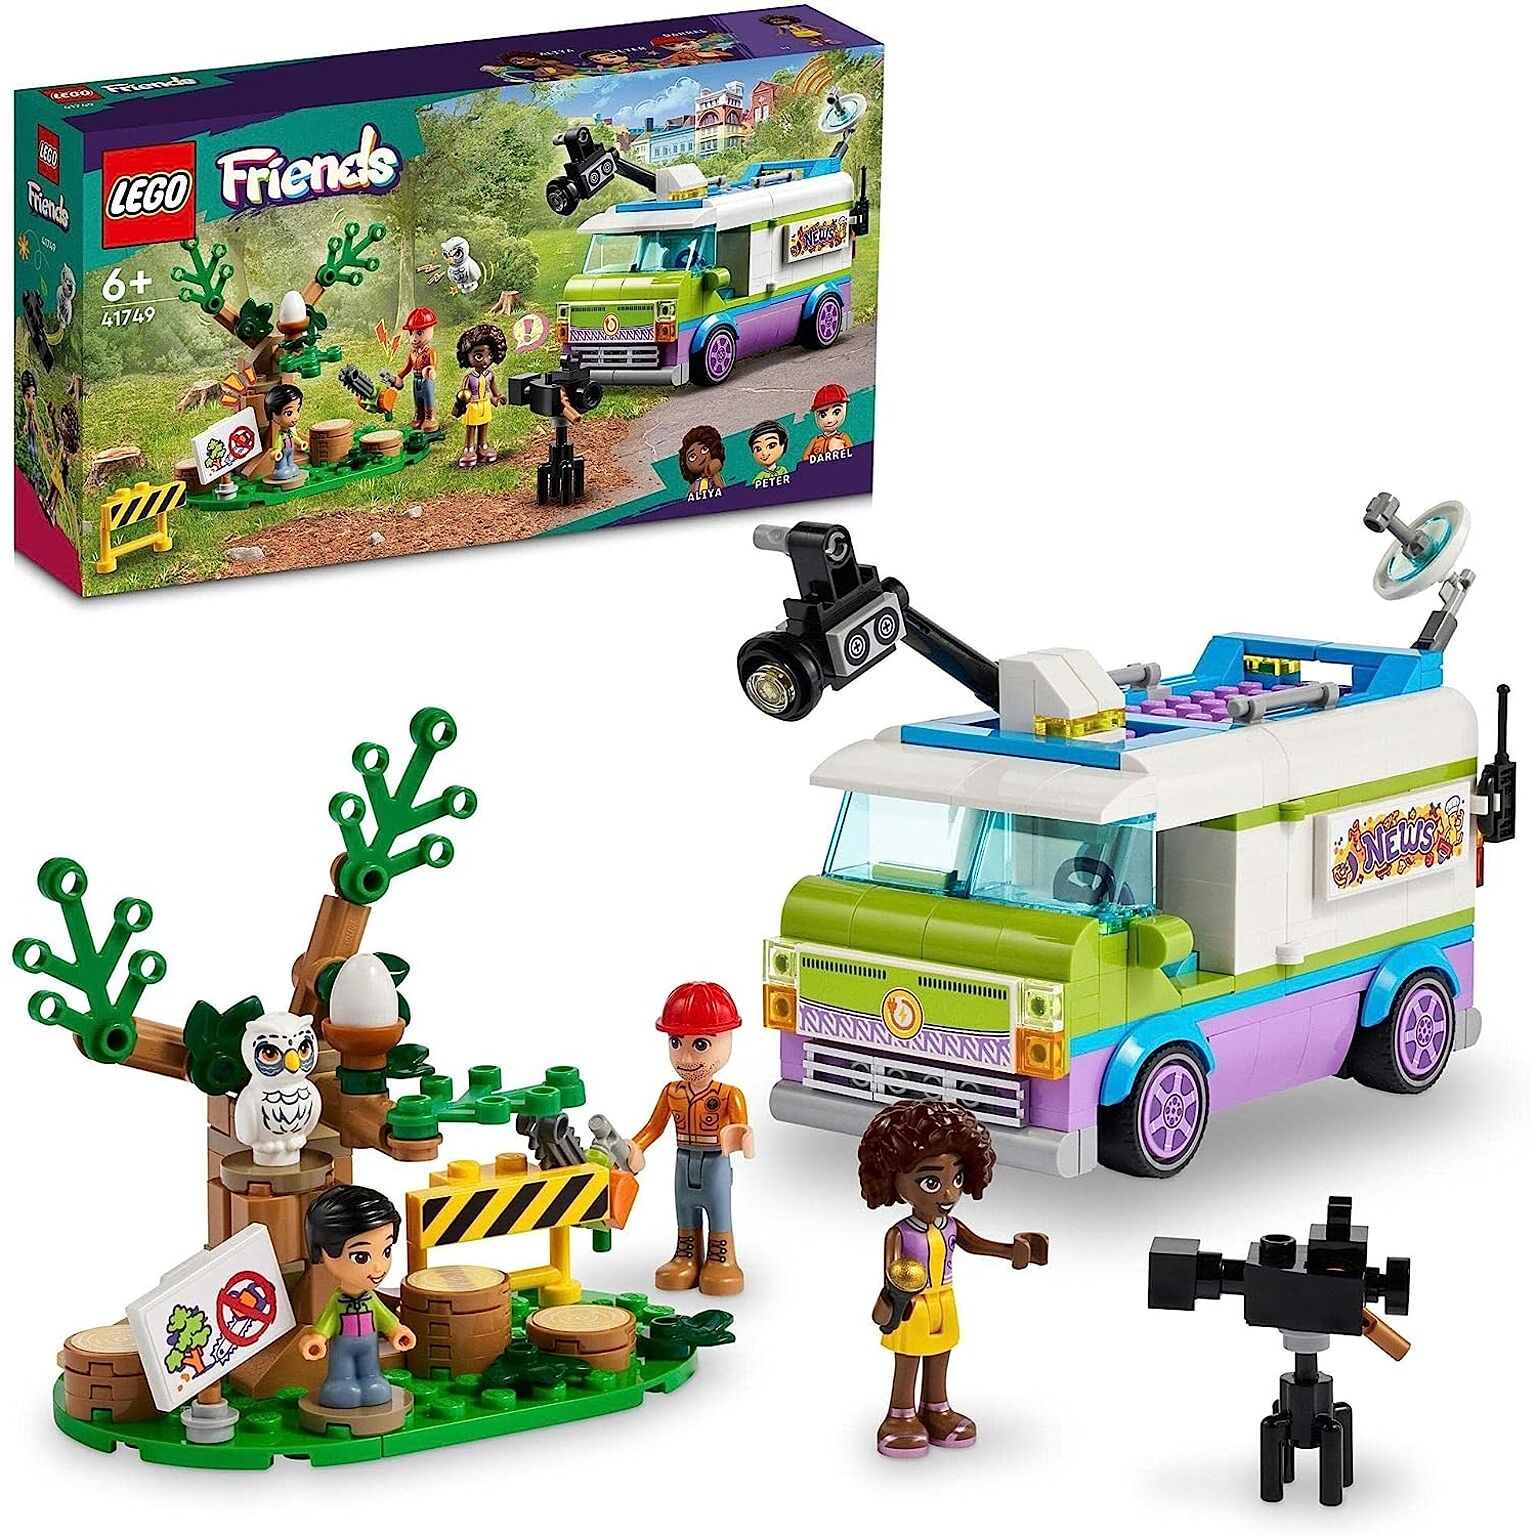 レゴ(LEGO) フレンズ 中継車 41749 おもちゃ ブロック プレゼント 乗り物 のりもの 女の子 6歳 ~